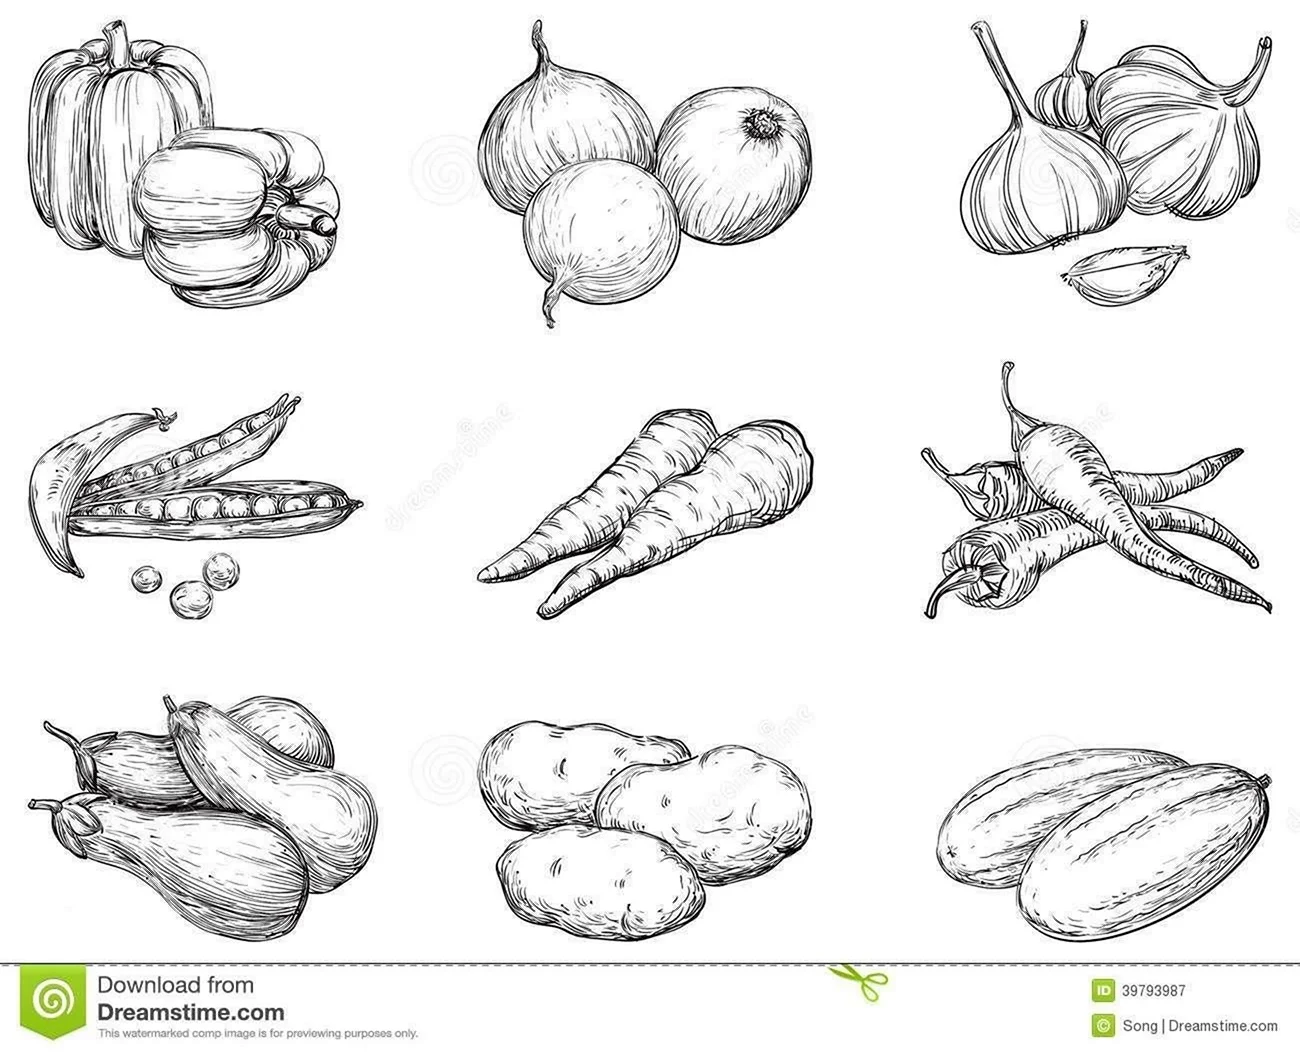 Рисунок фруктов и овощей карандашом. Для срисовки